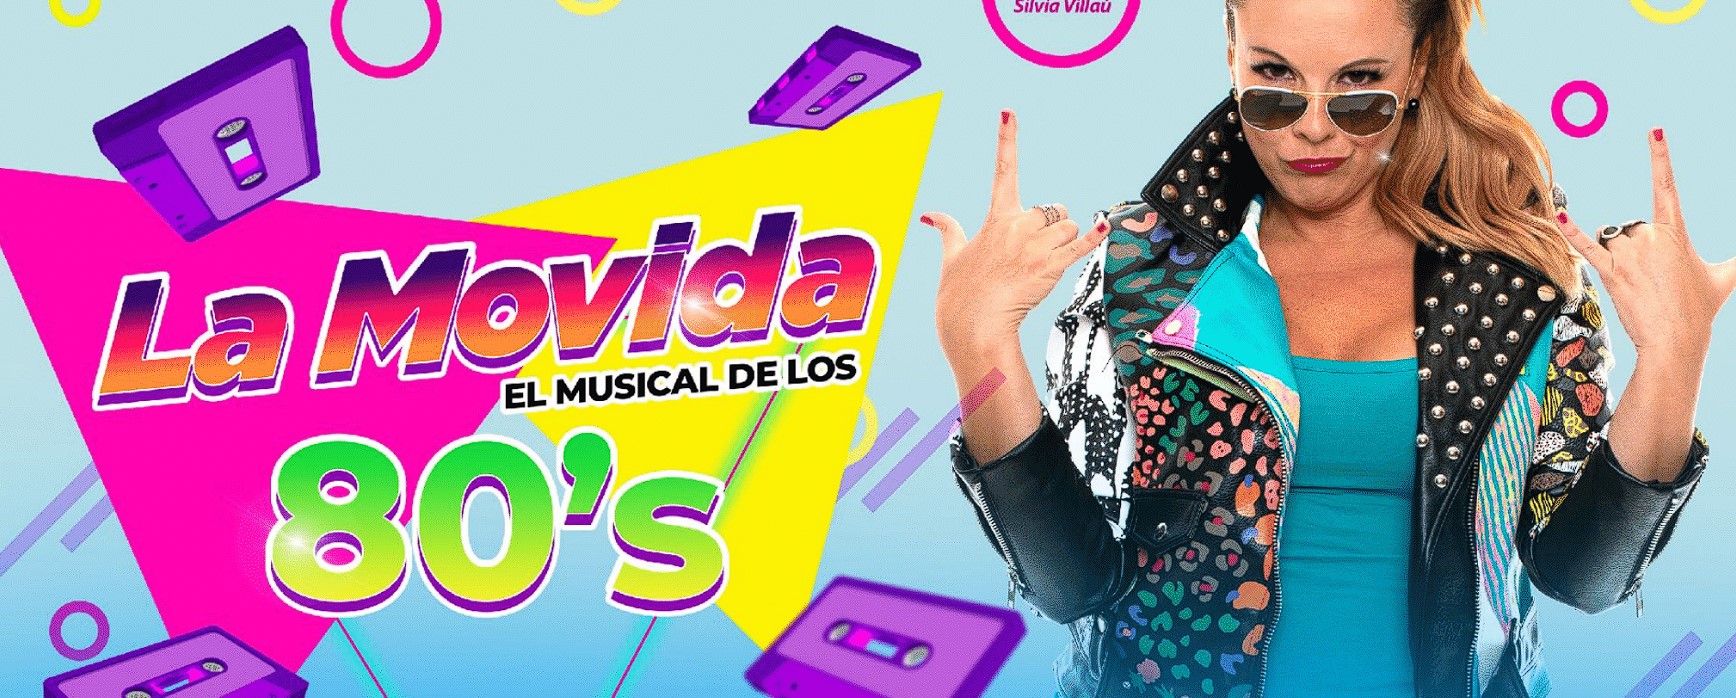 La Movida, El musical de los 80’s